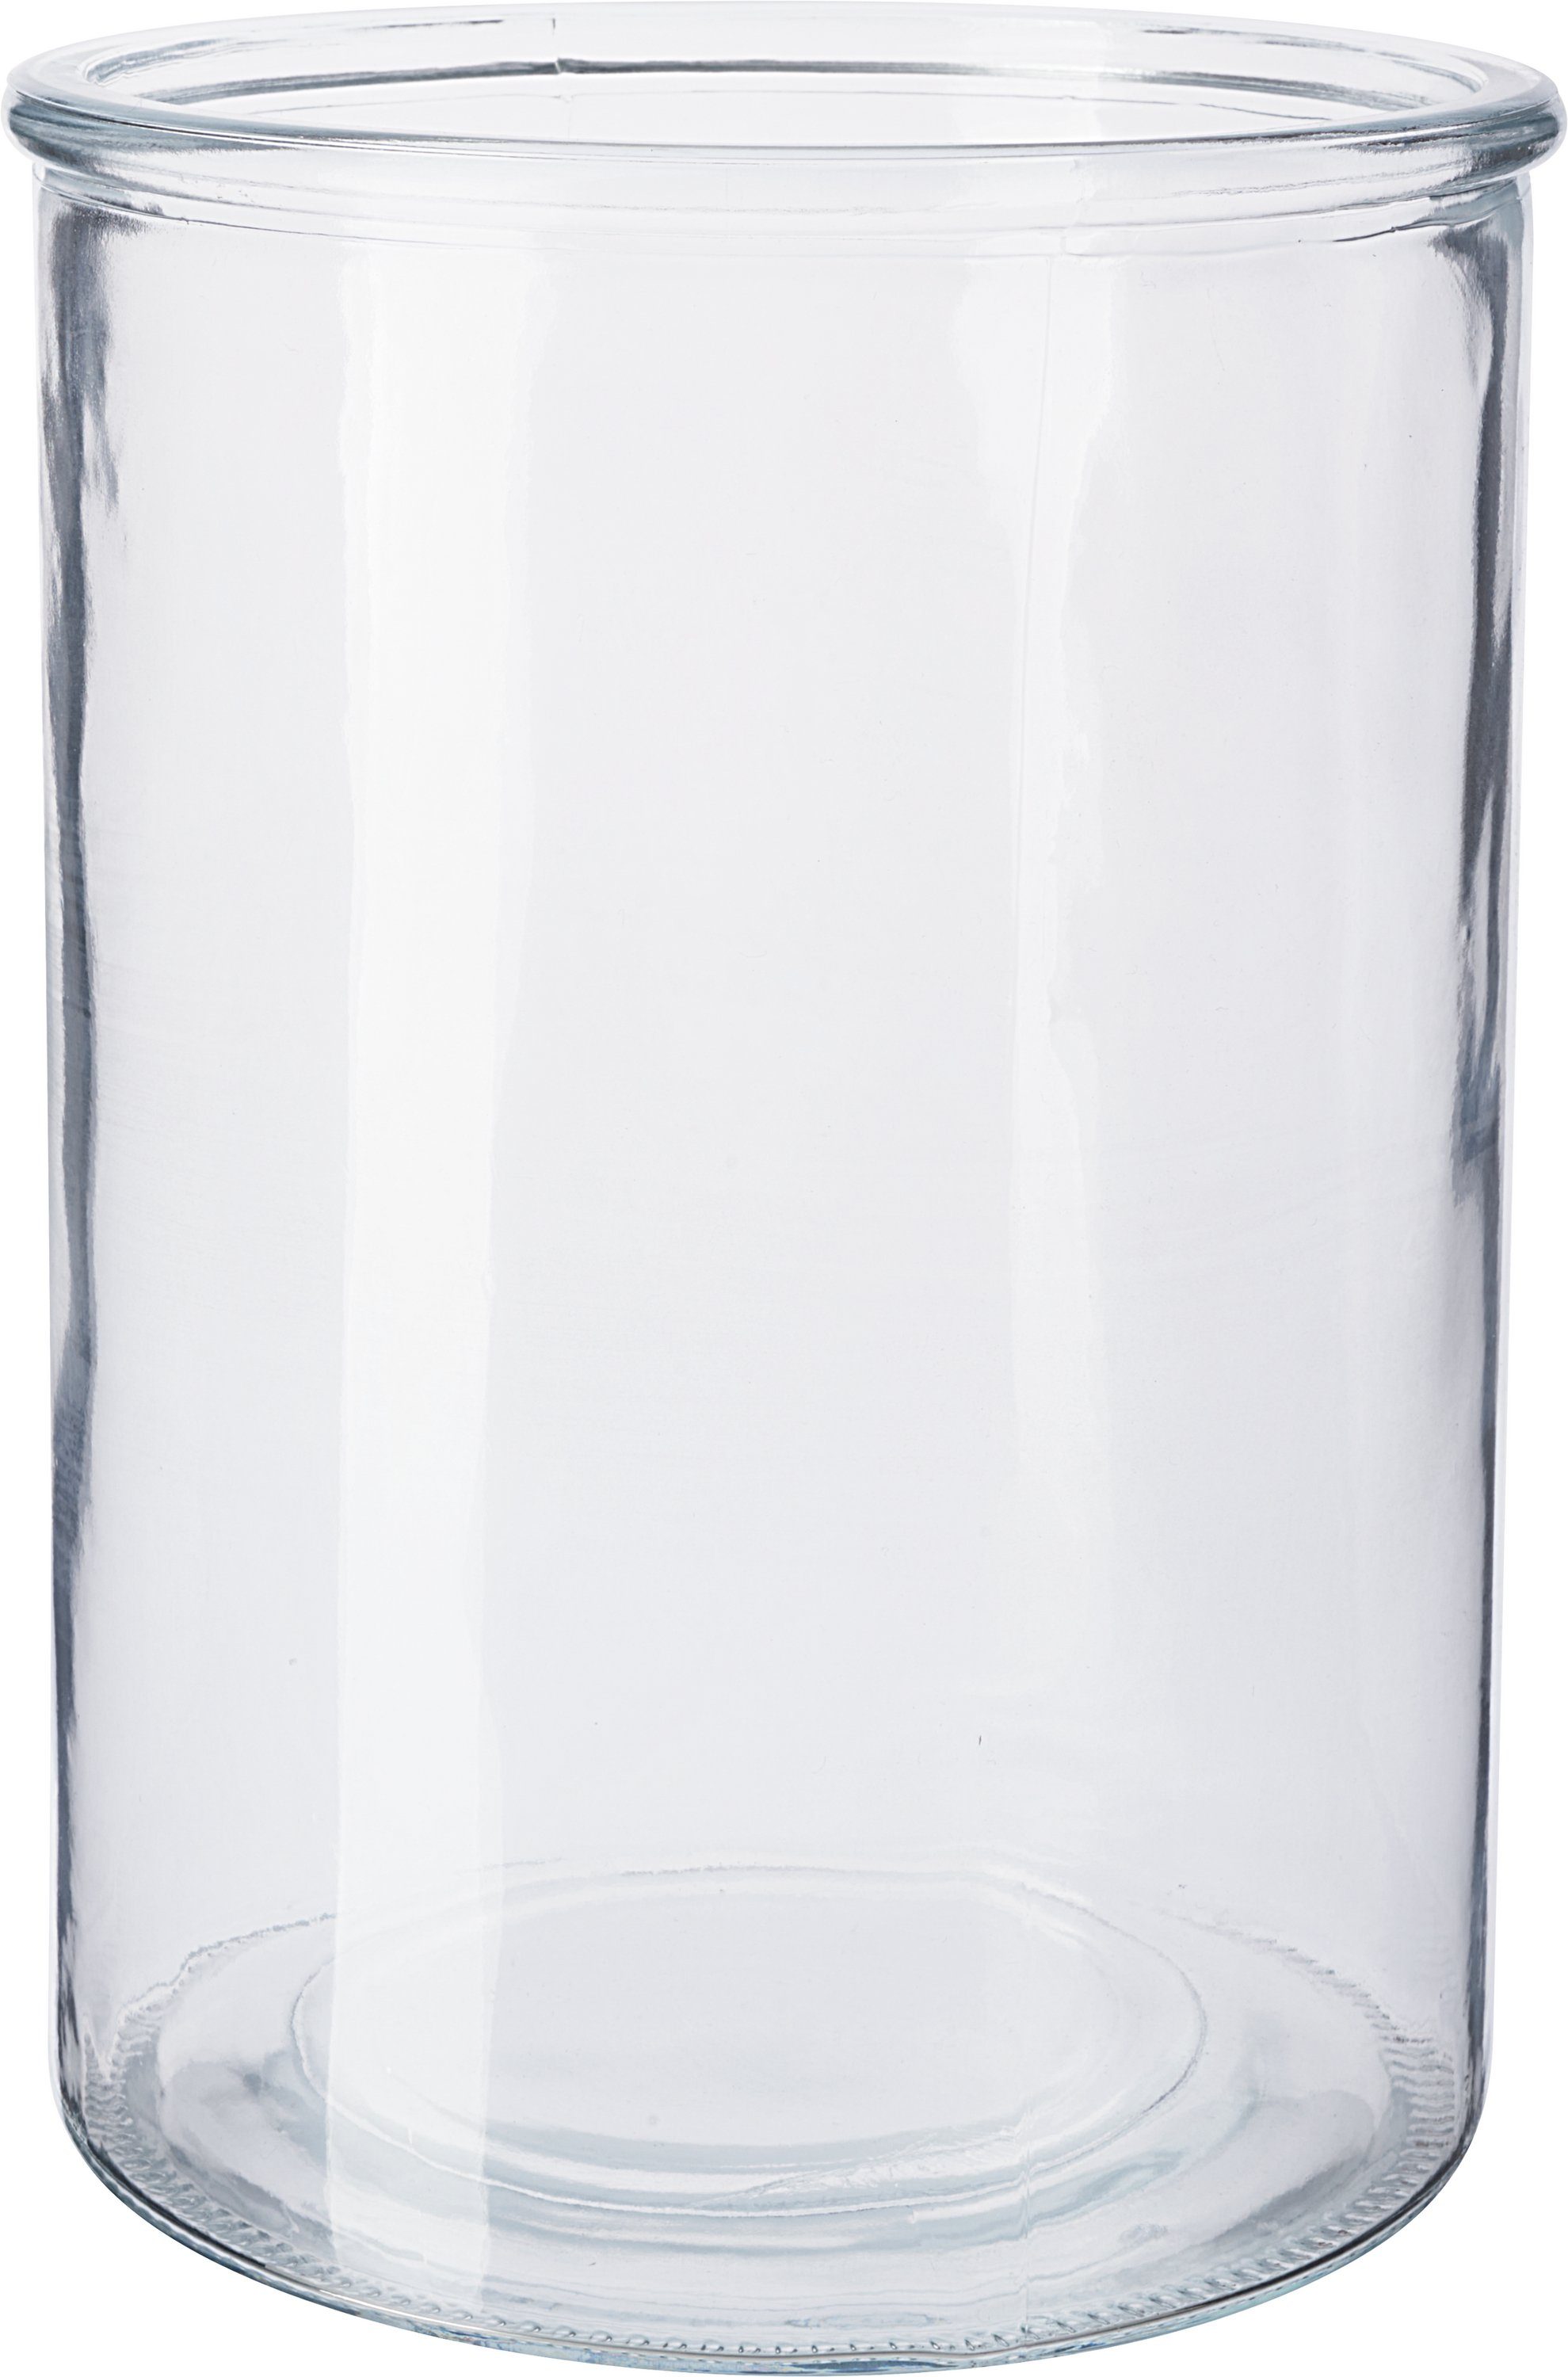 VBS Windlicht Glaszylinder, Ø 15,5 cm online kaufen | OTTO